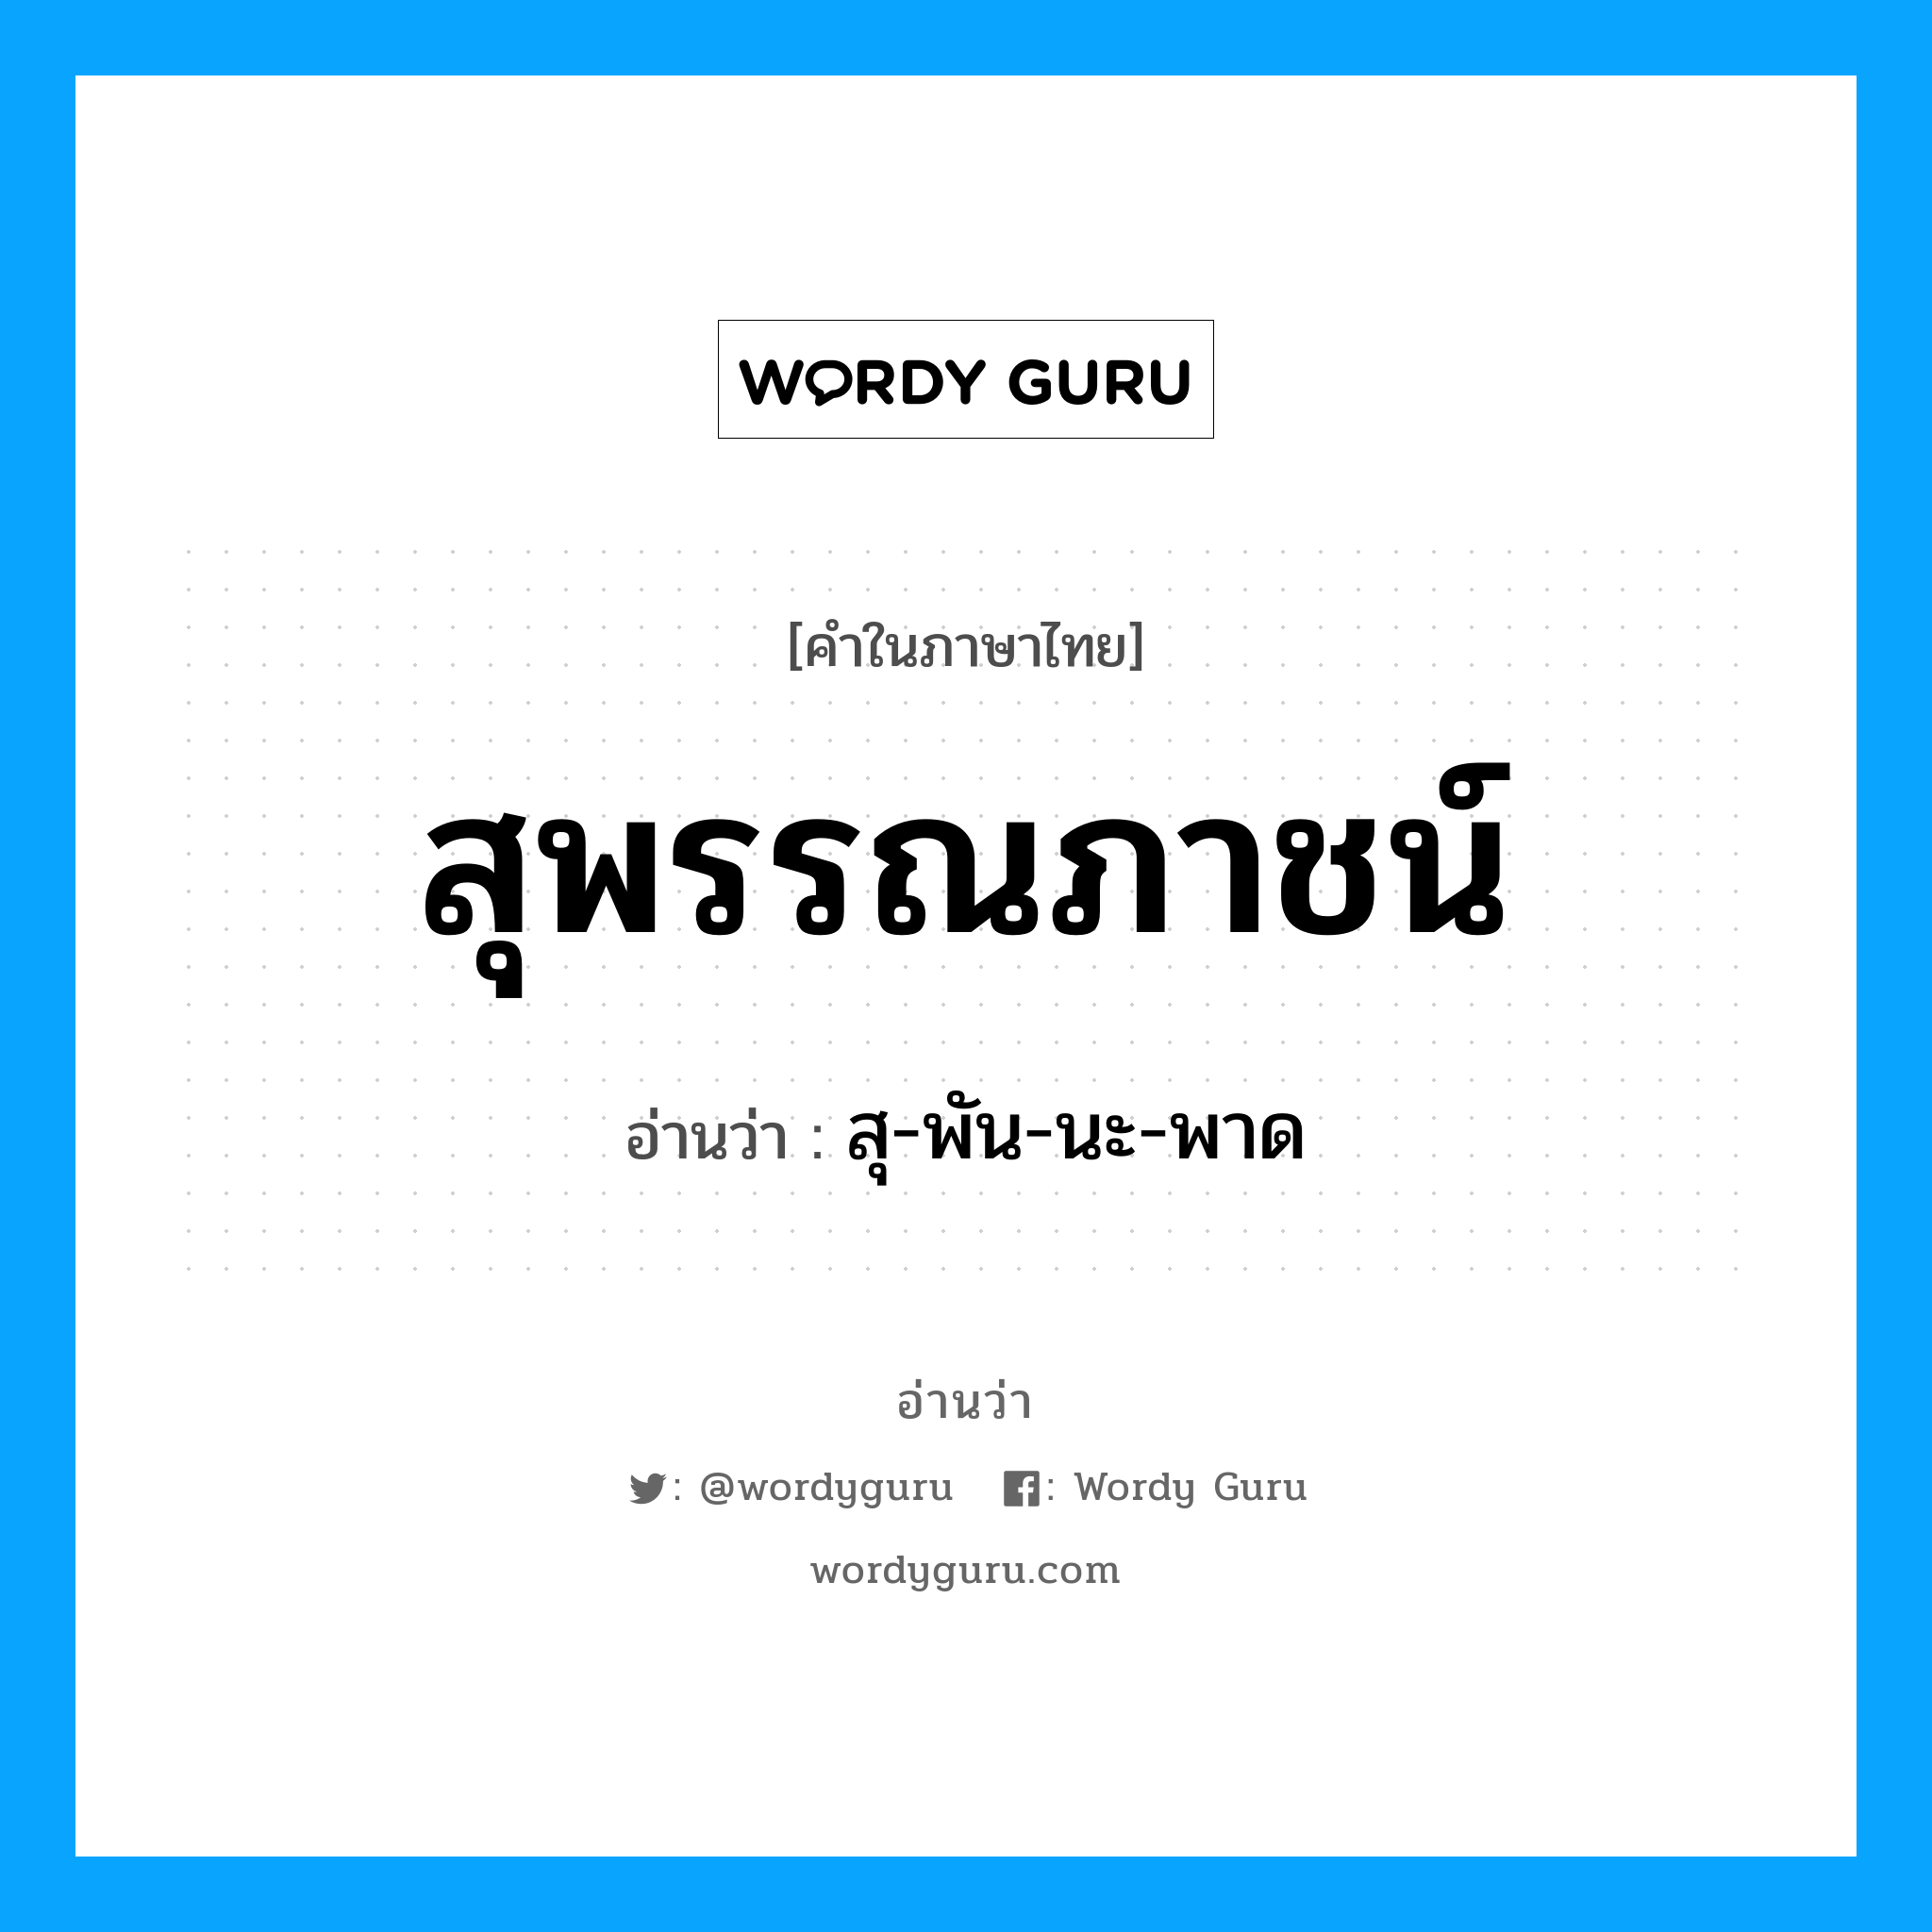 สุ-พัน-นะ-พาด เป็นคำอ่านของคำไหน?, คำในภาษาไทย สุ-พัน-นะ-พาด อ่านว่า สุพรรณภาชน์